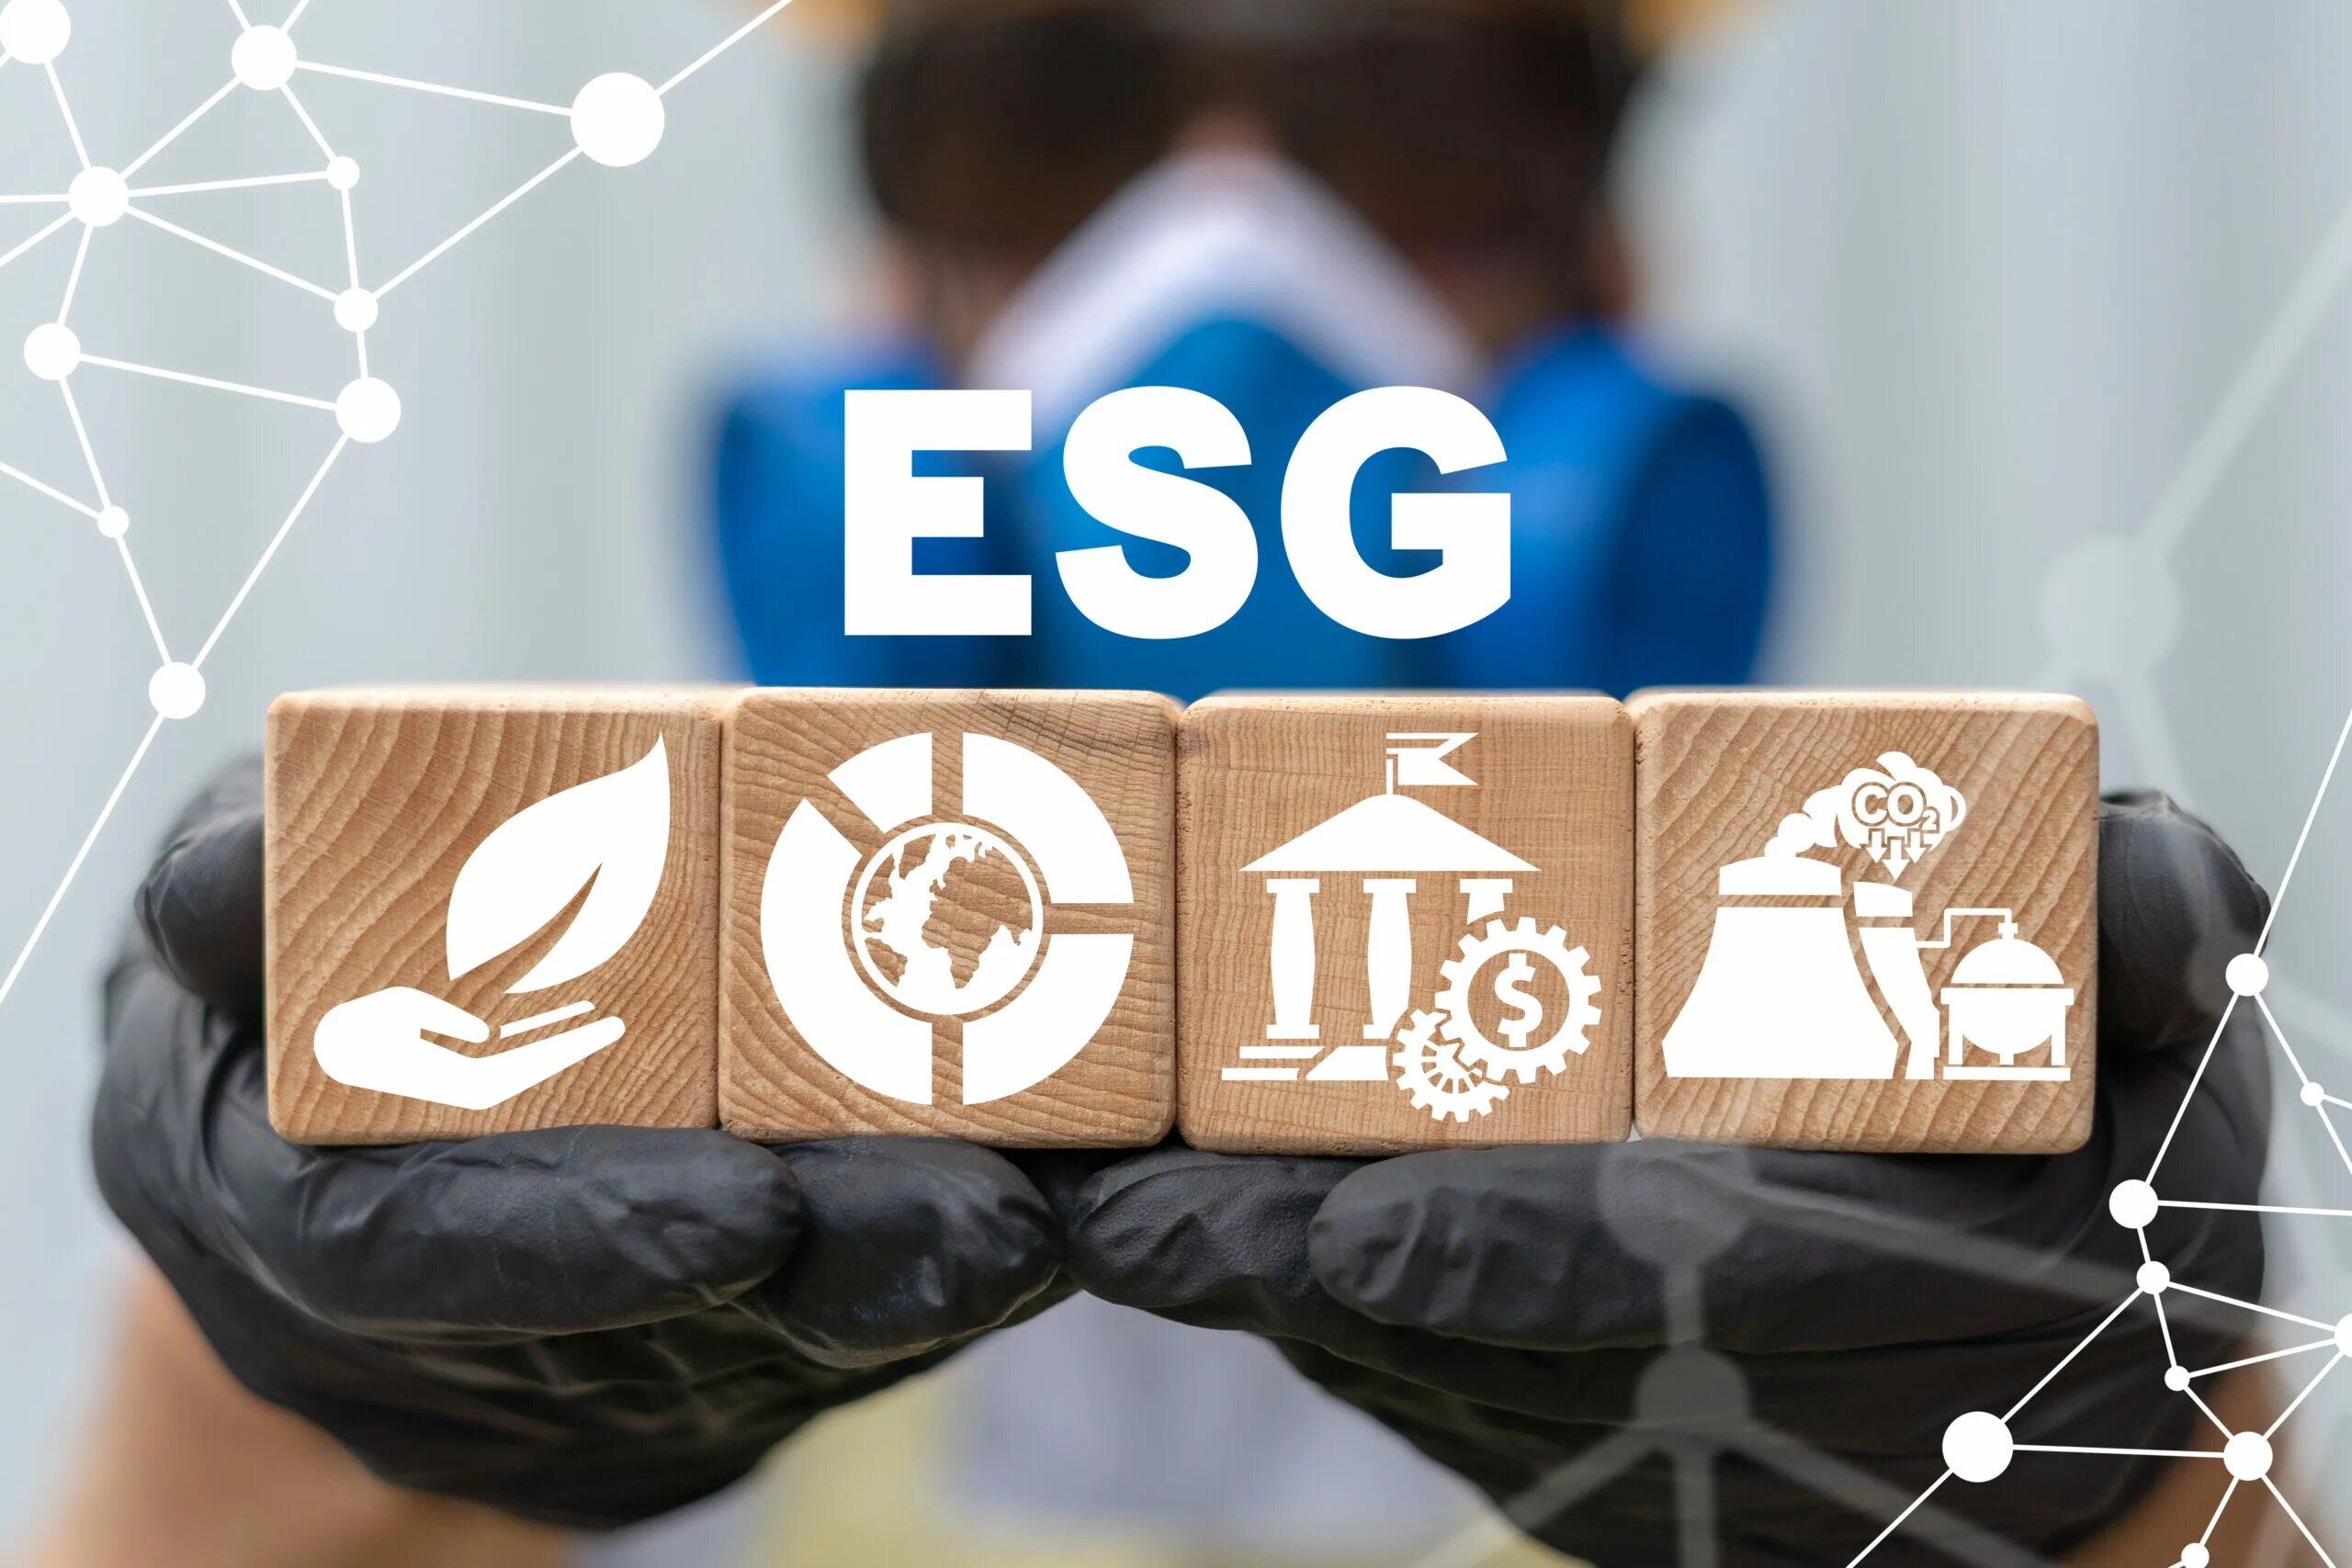 Esg отчетность. ESG. ESG стратегия. ESG принципы. ESG инвестиции.